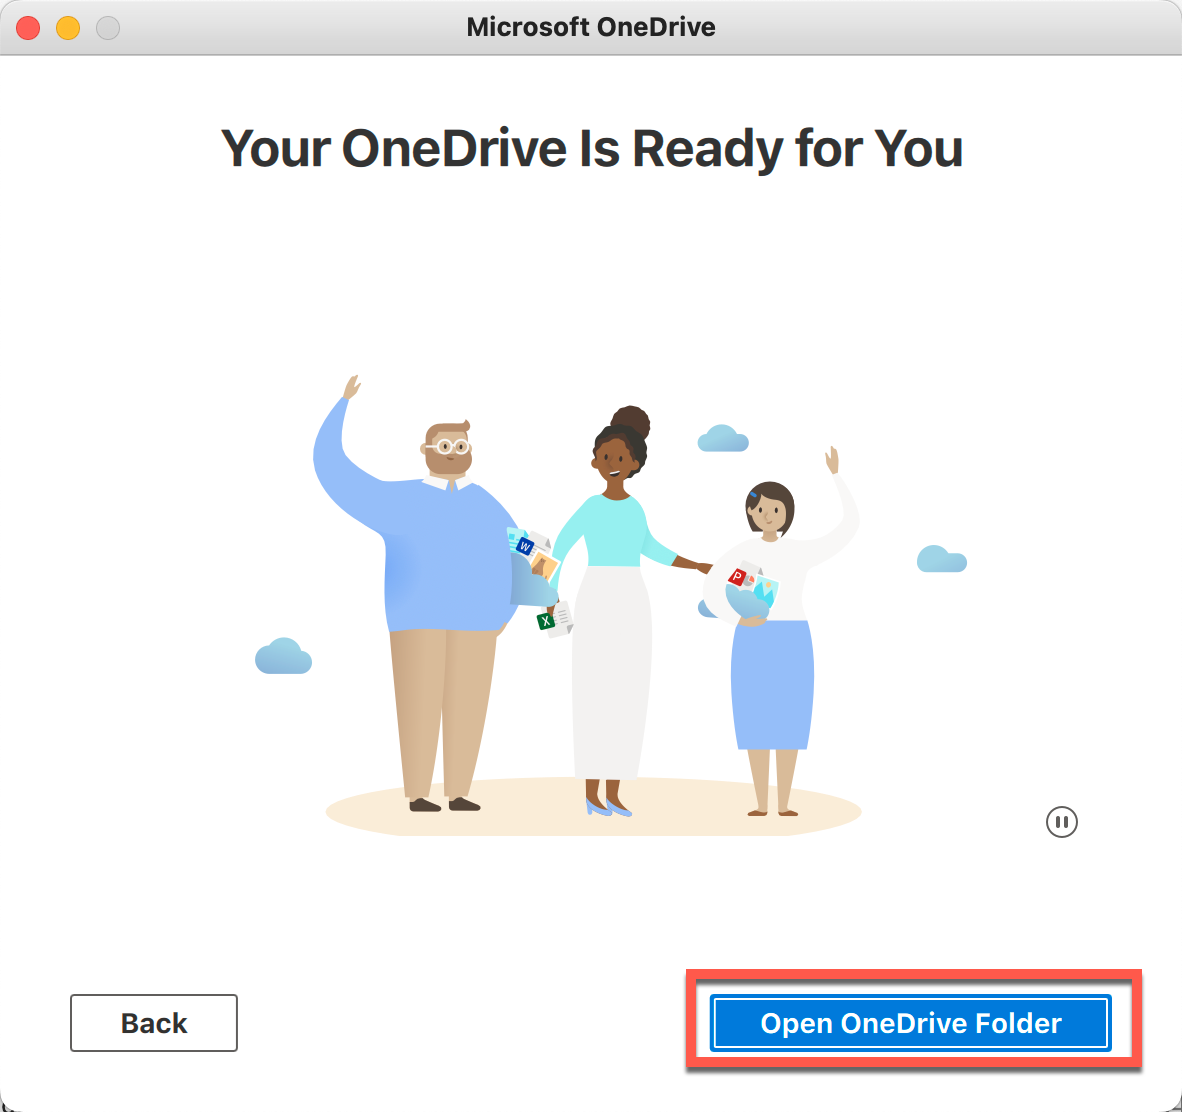 Mac - Open OneDrive Folder